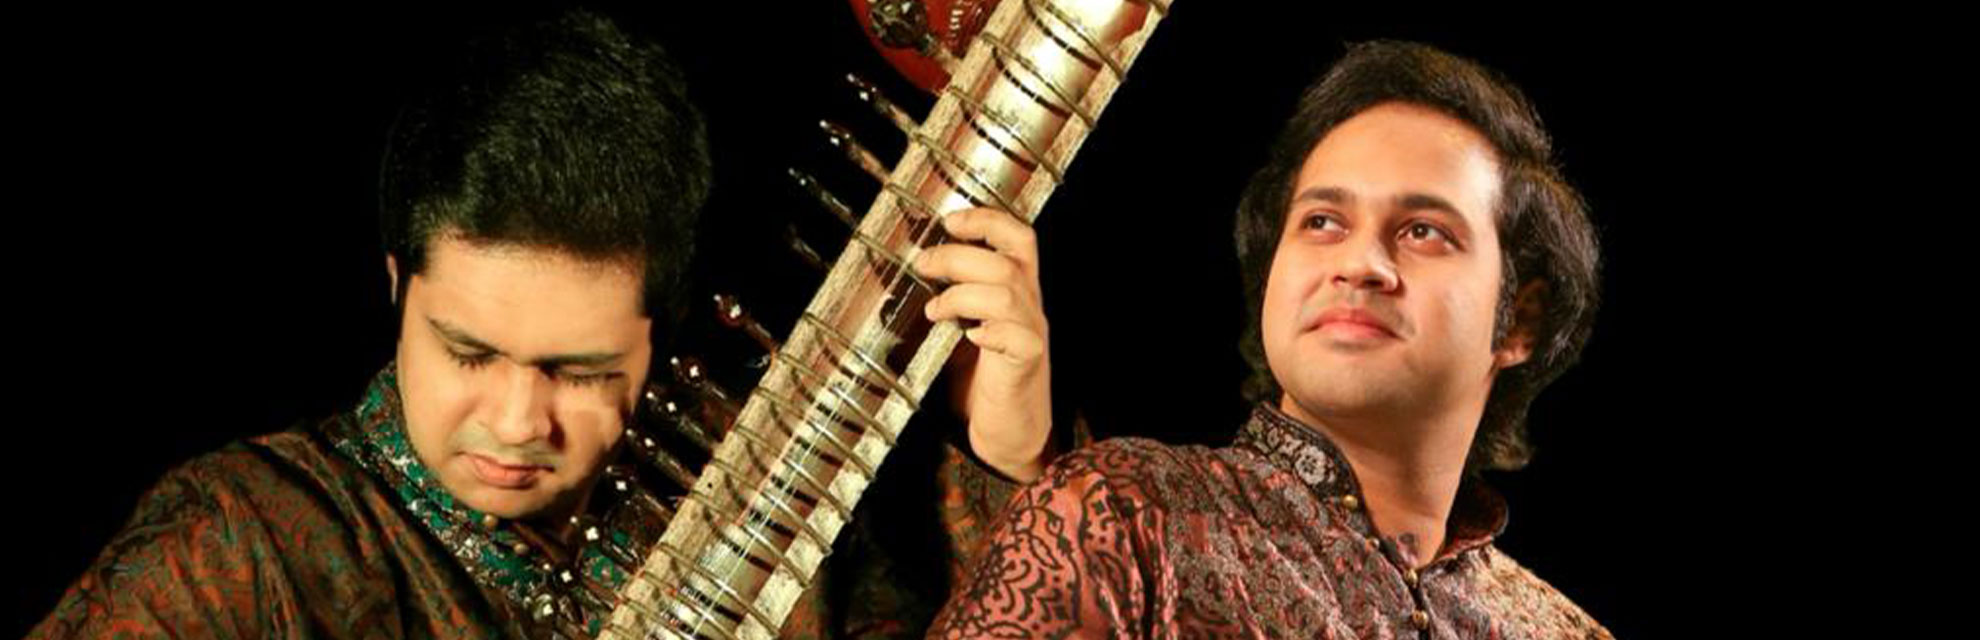 'jugalbandi' toàn cầu: Anh em Mohan đưa âm nhạc Hindustani ra thế giới